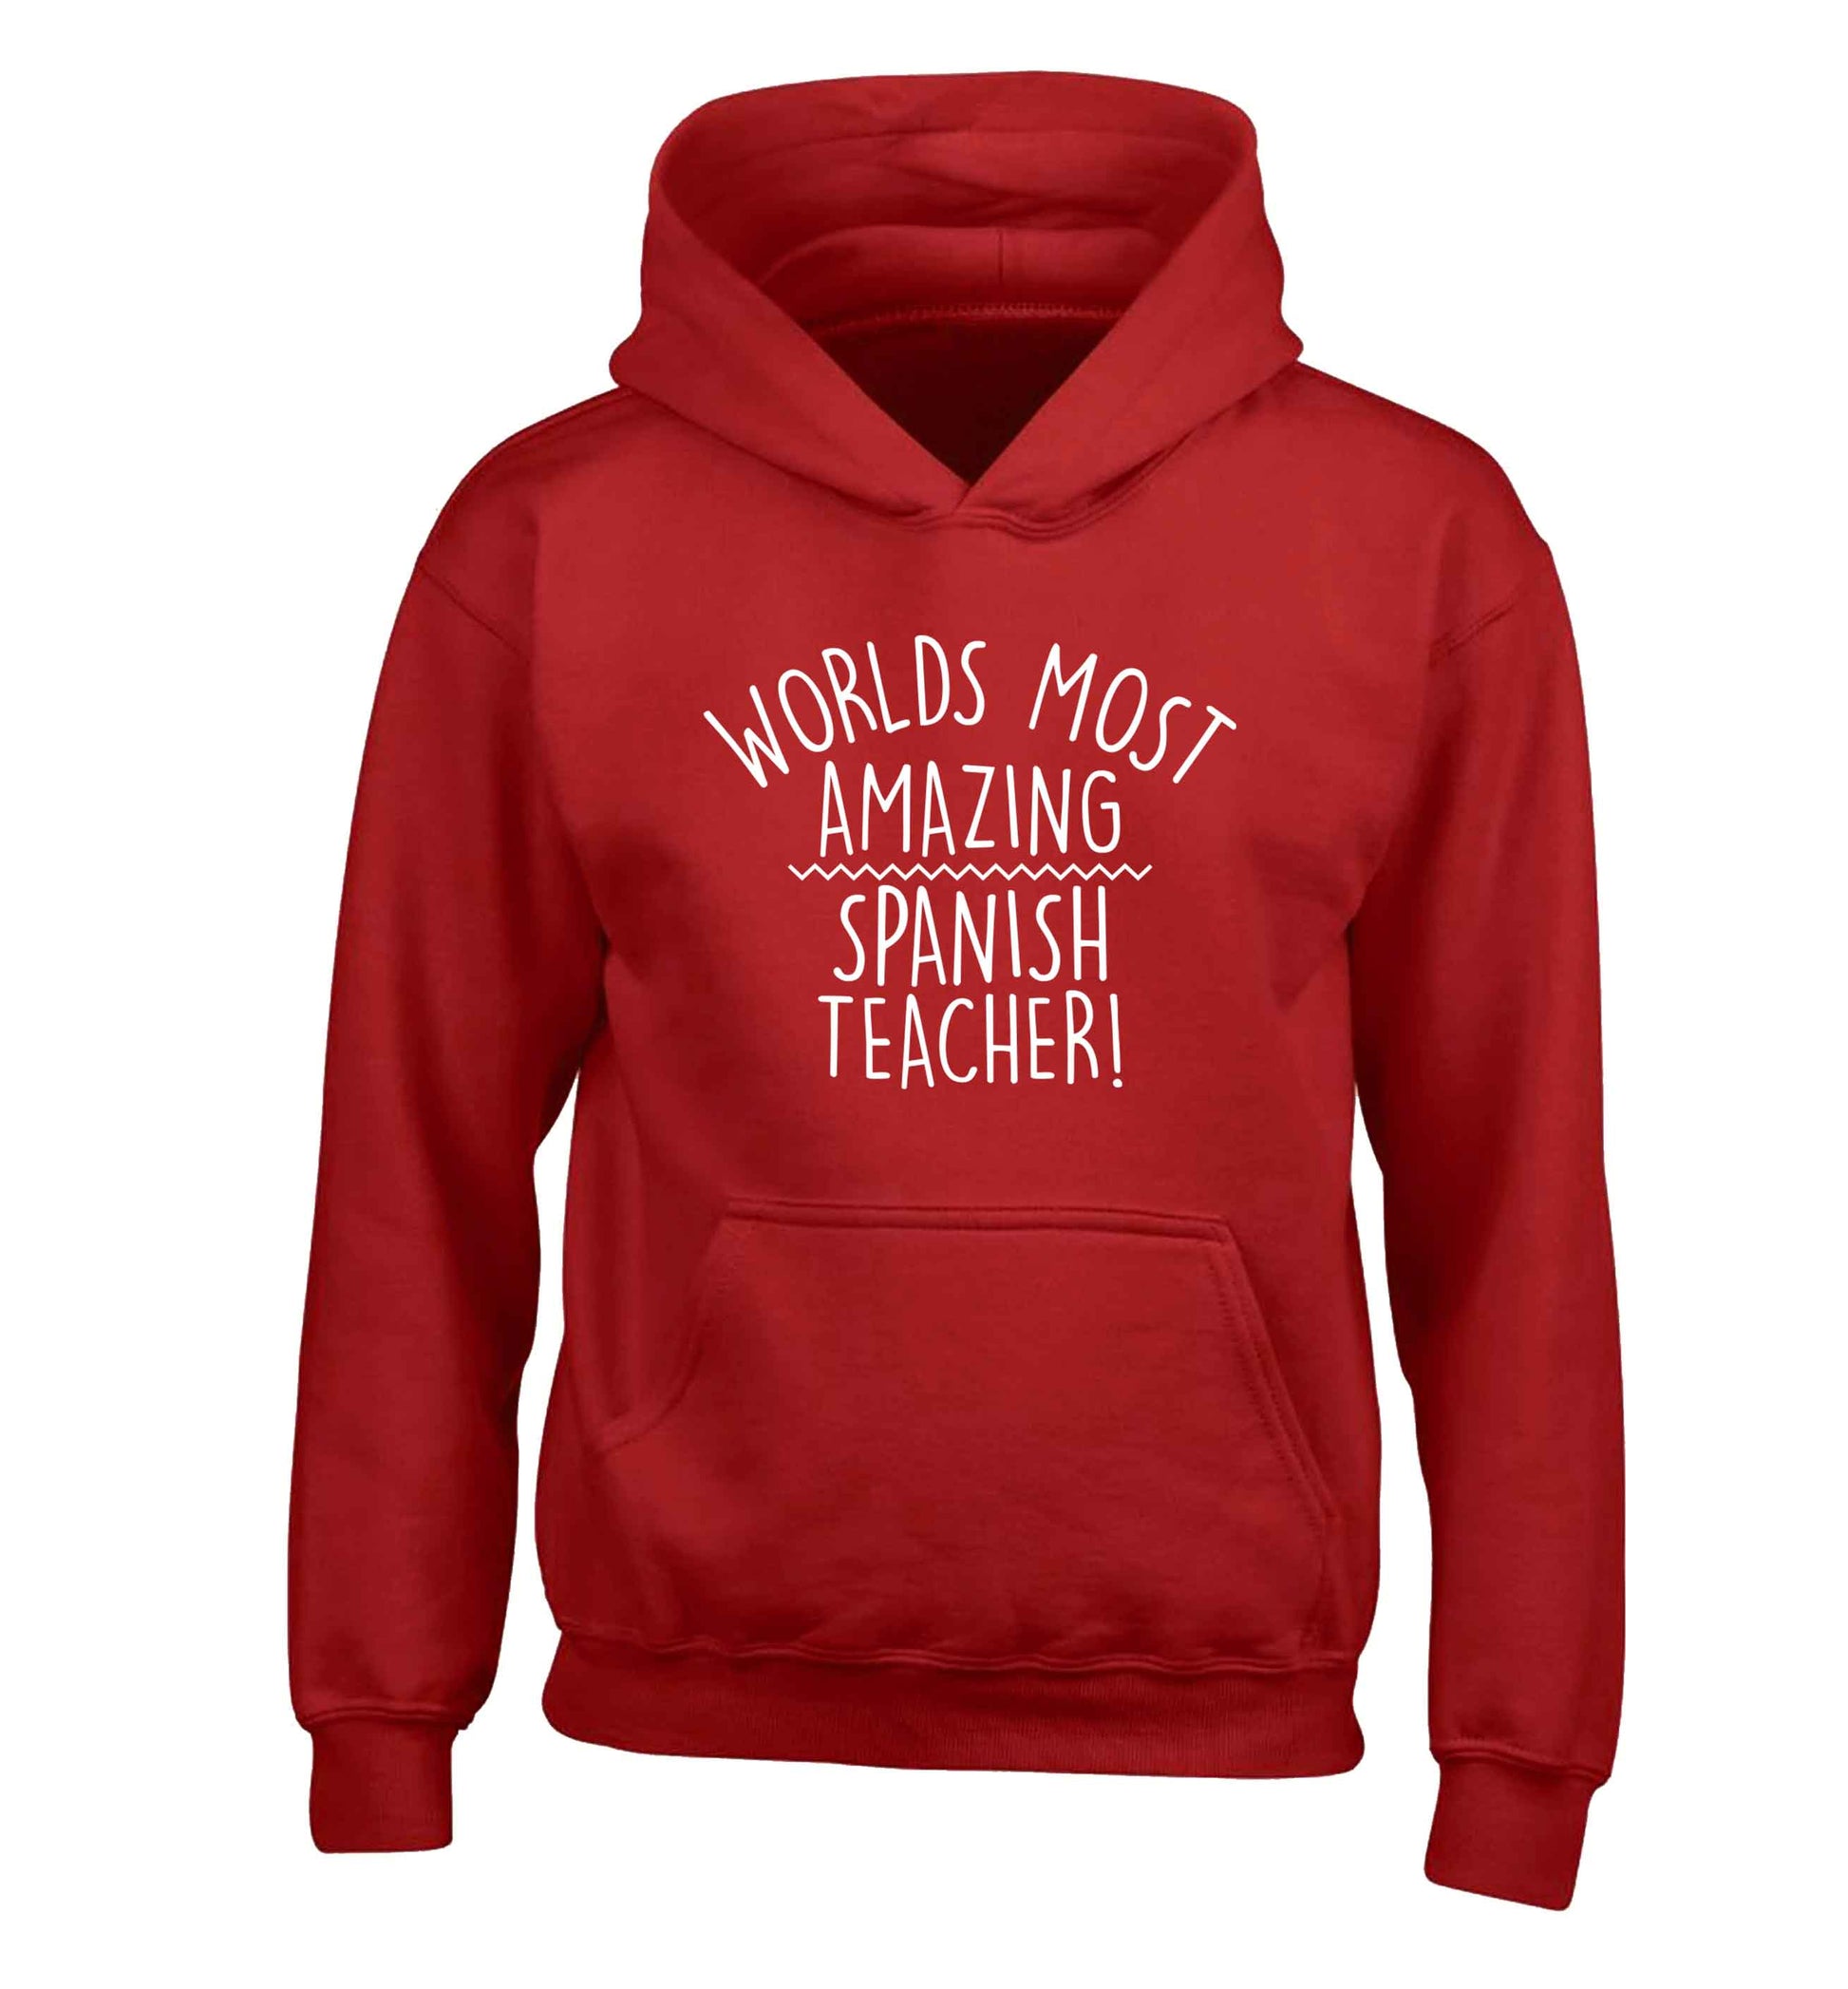 Worlds most amazing Spanish teacher children's red hoodie 12-13 Years